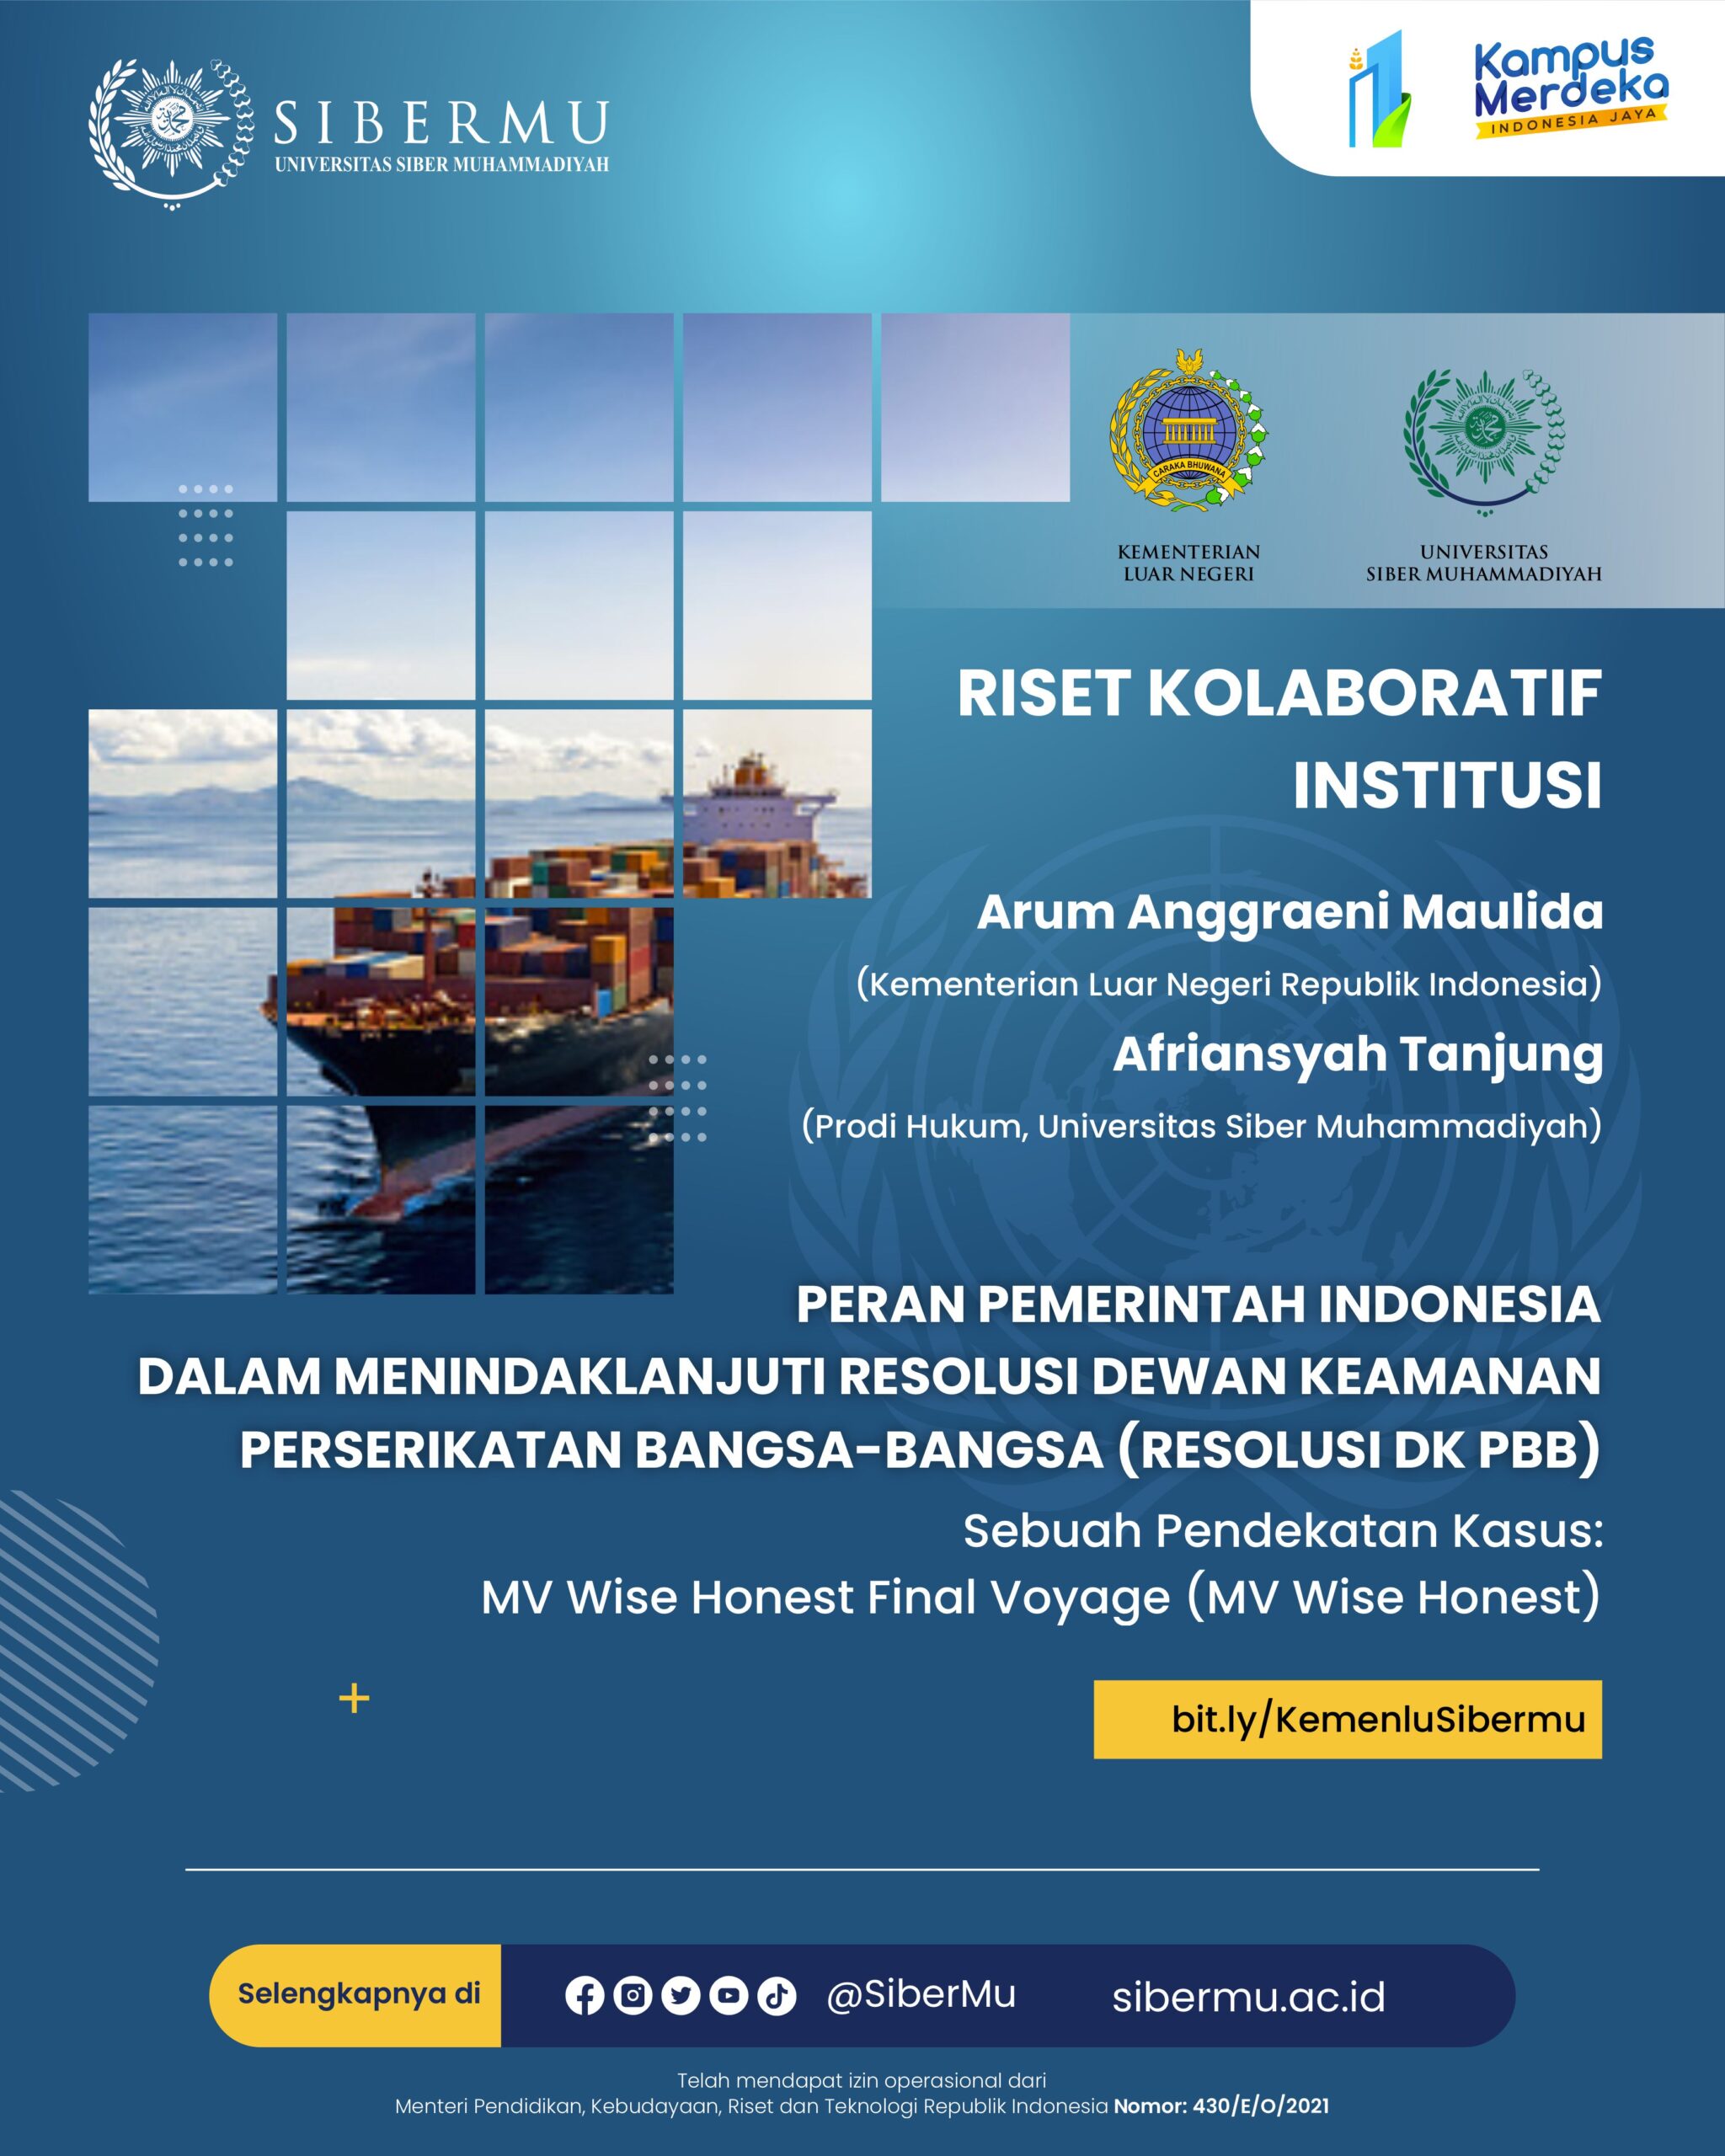 Peran Pemerintah Indonesia dalam Menindaklanjuti Resolusi Dewan Keamanan Perserikatan Bangsa-Bangsa (Resolusi DK PBB)